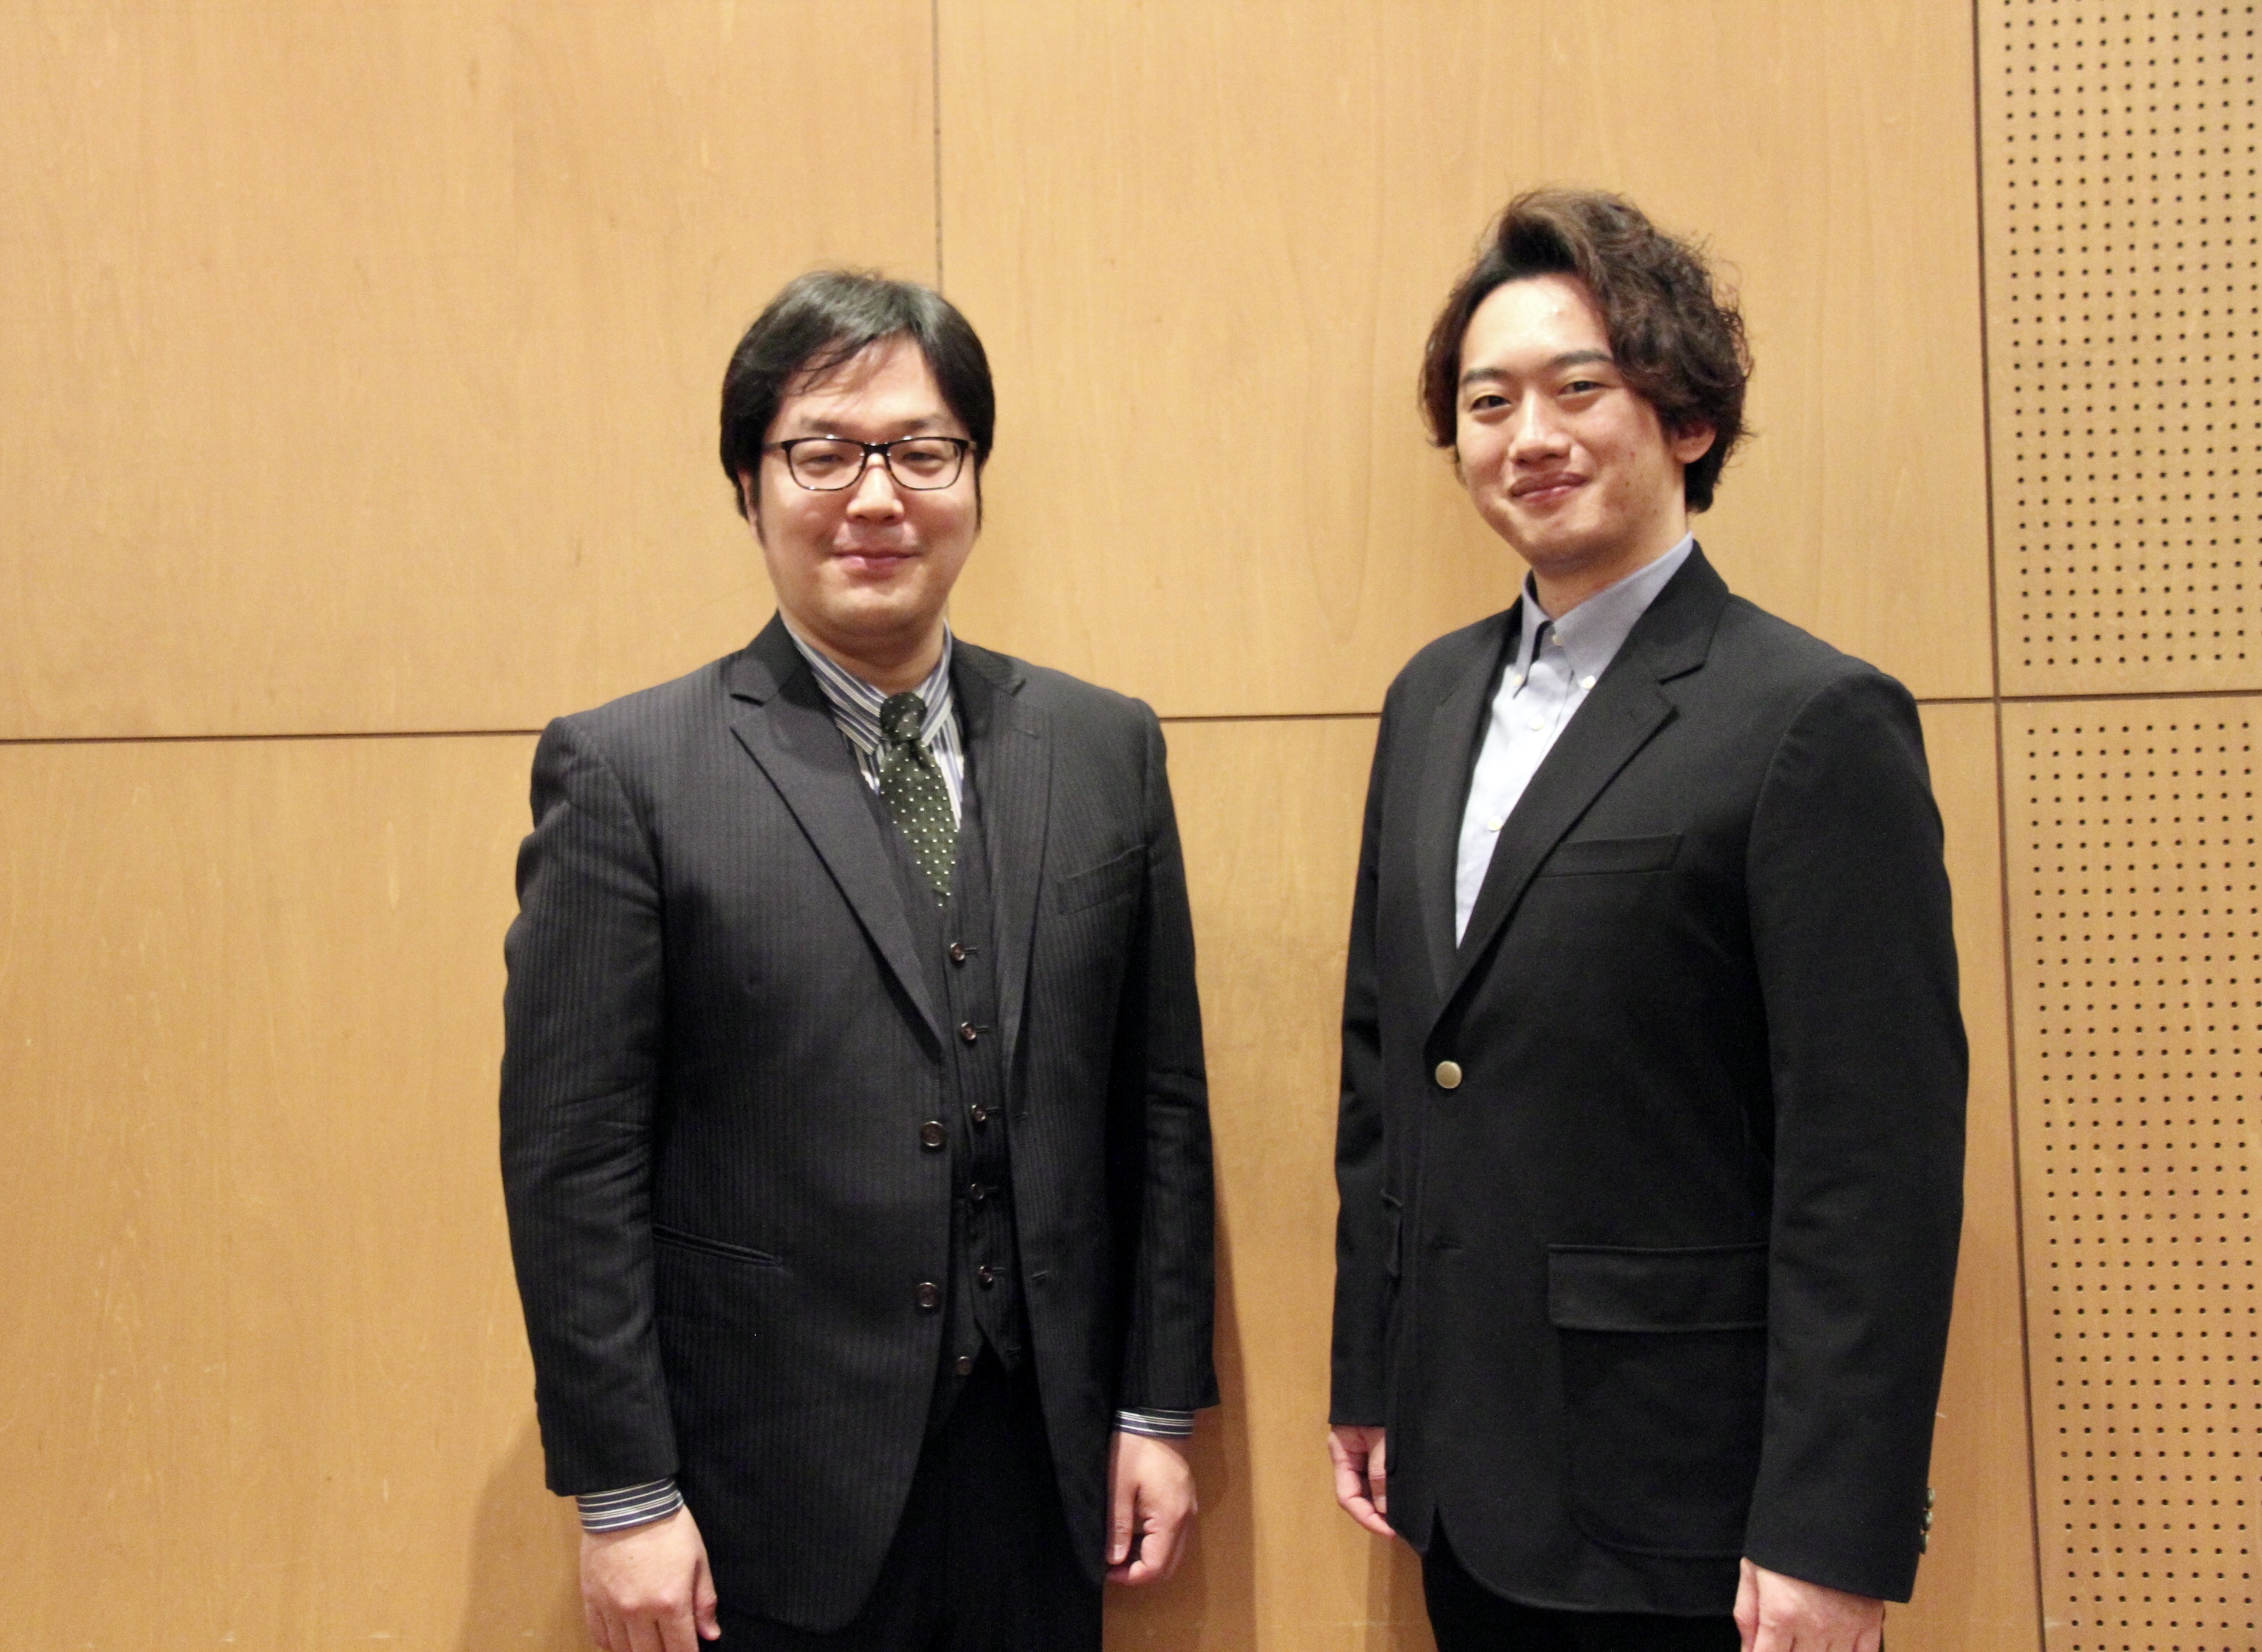 平欣史（右）と清水徹太郎 　　　　(C)H.isojima